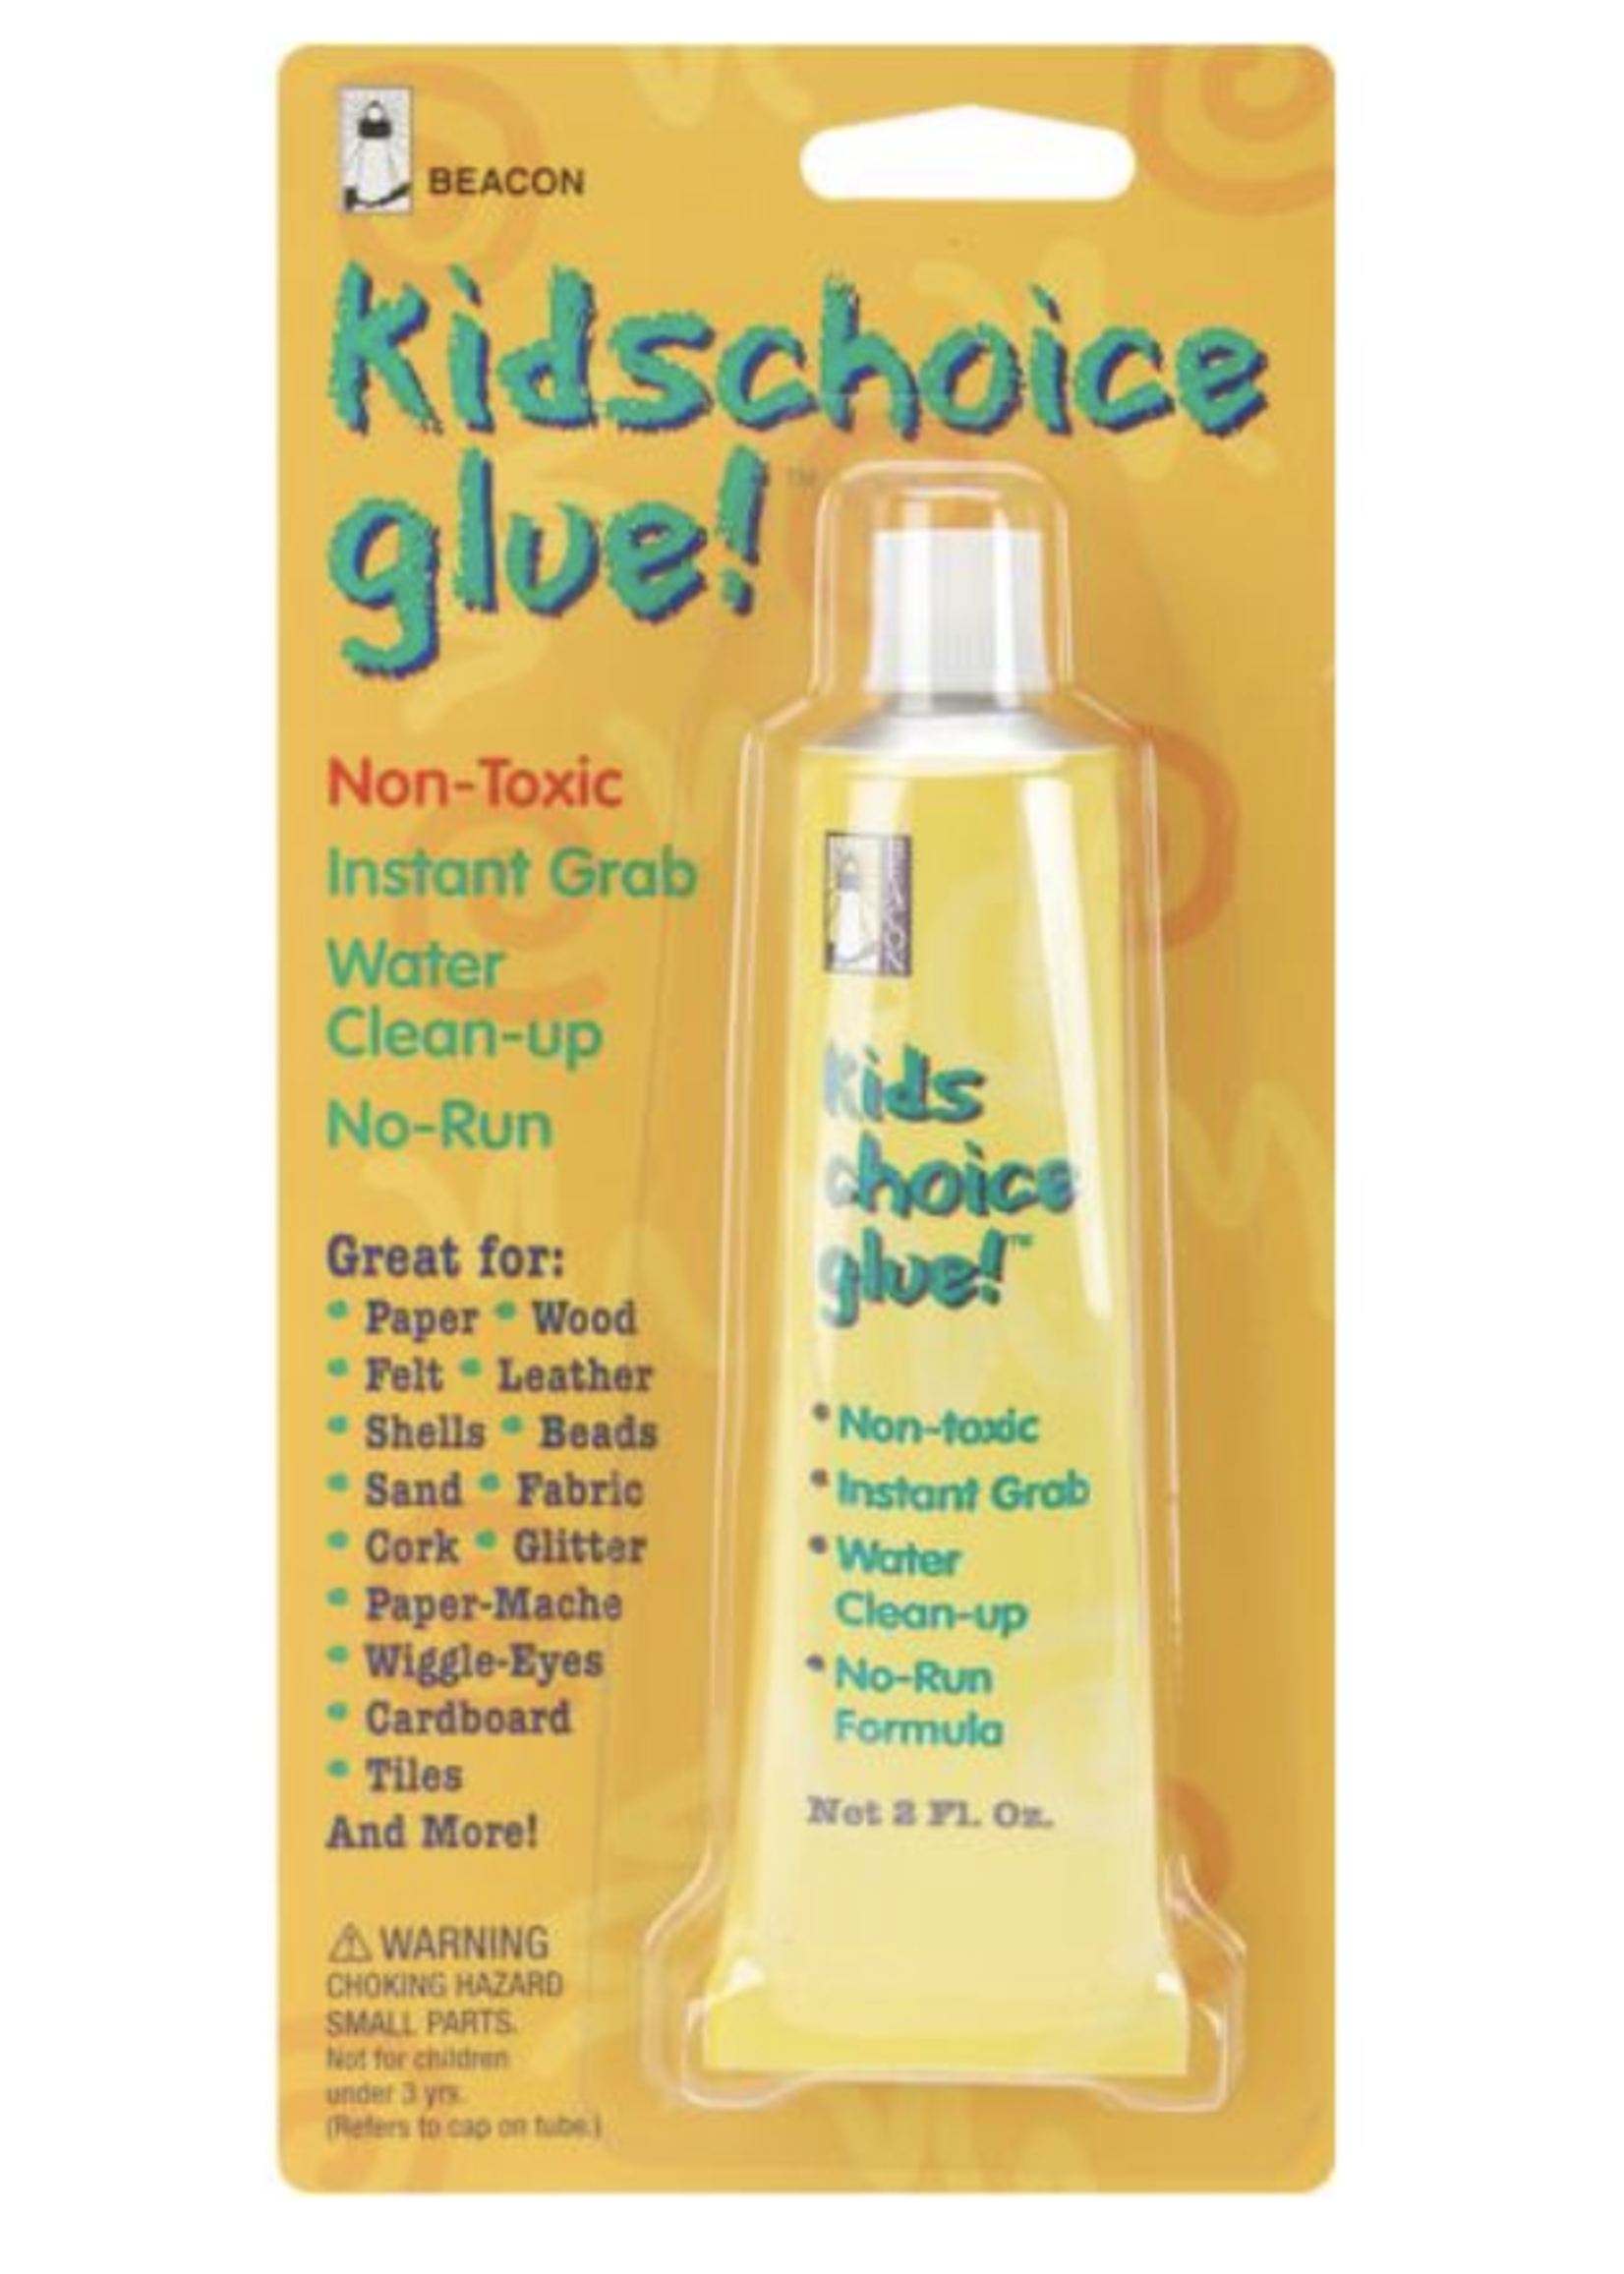 Beacon Kids Choice Glue!